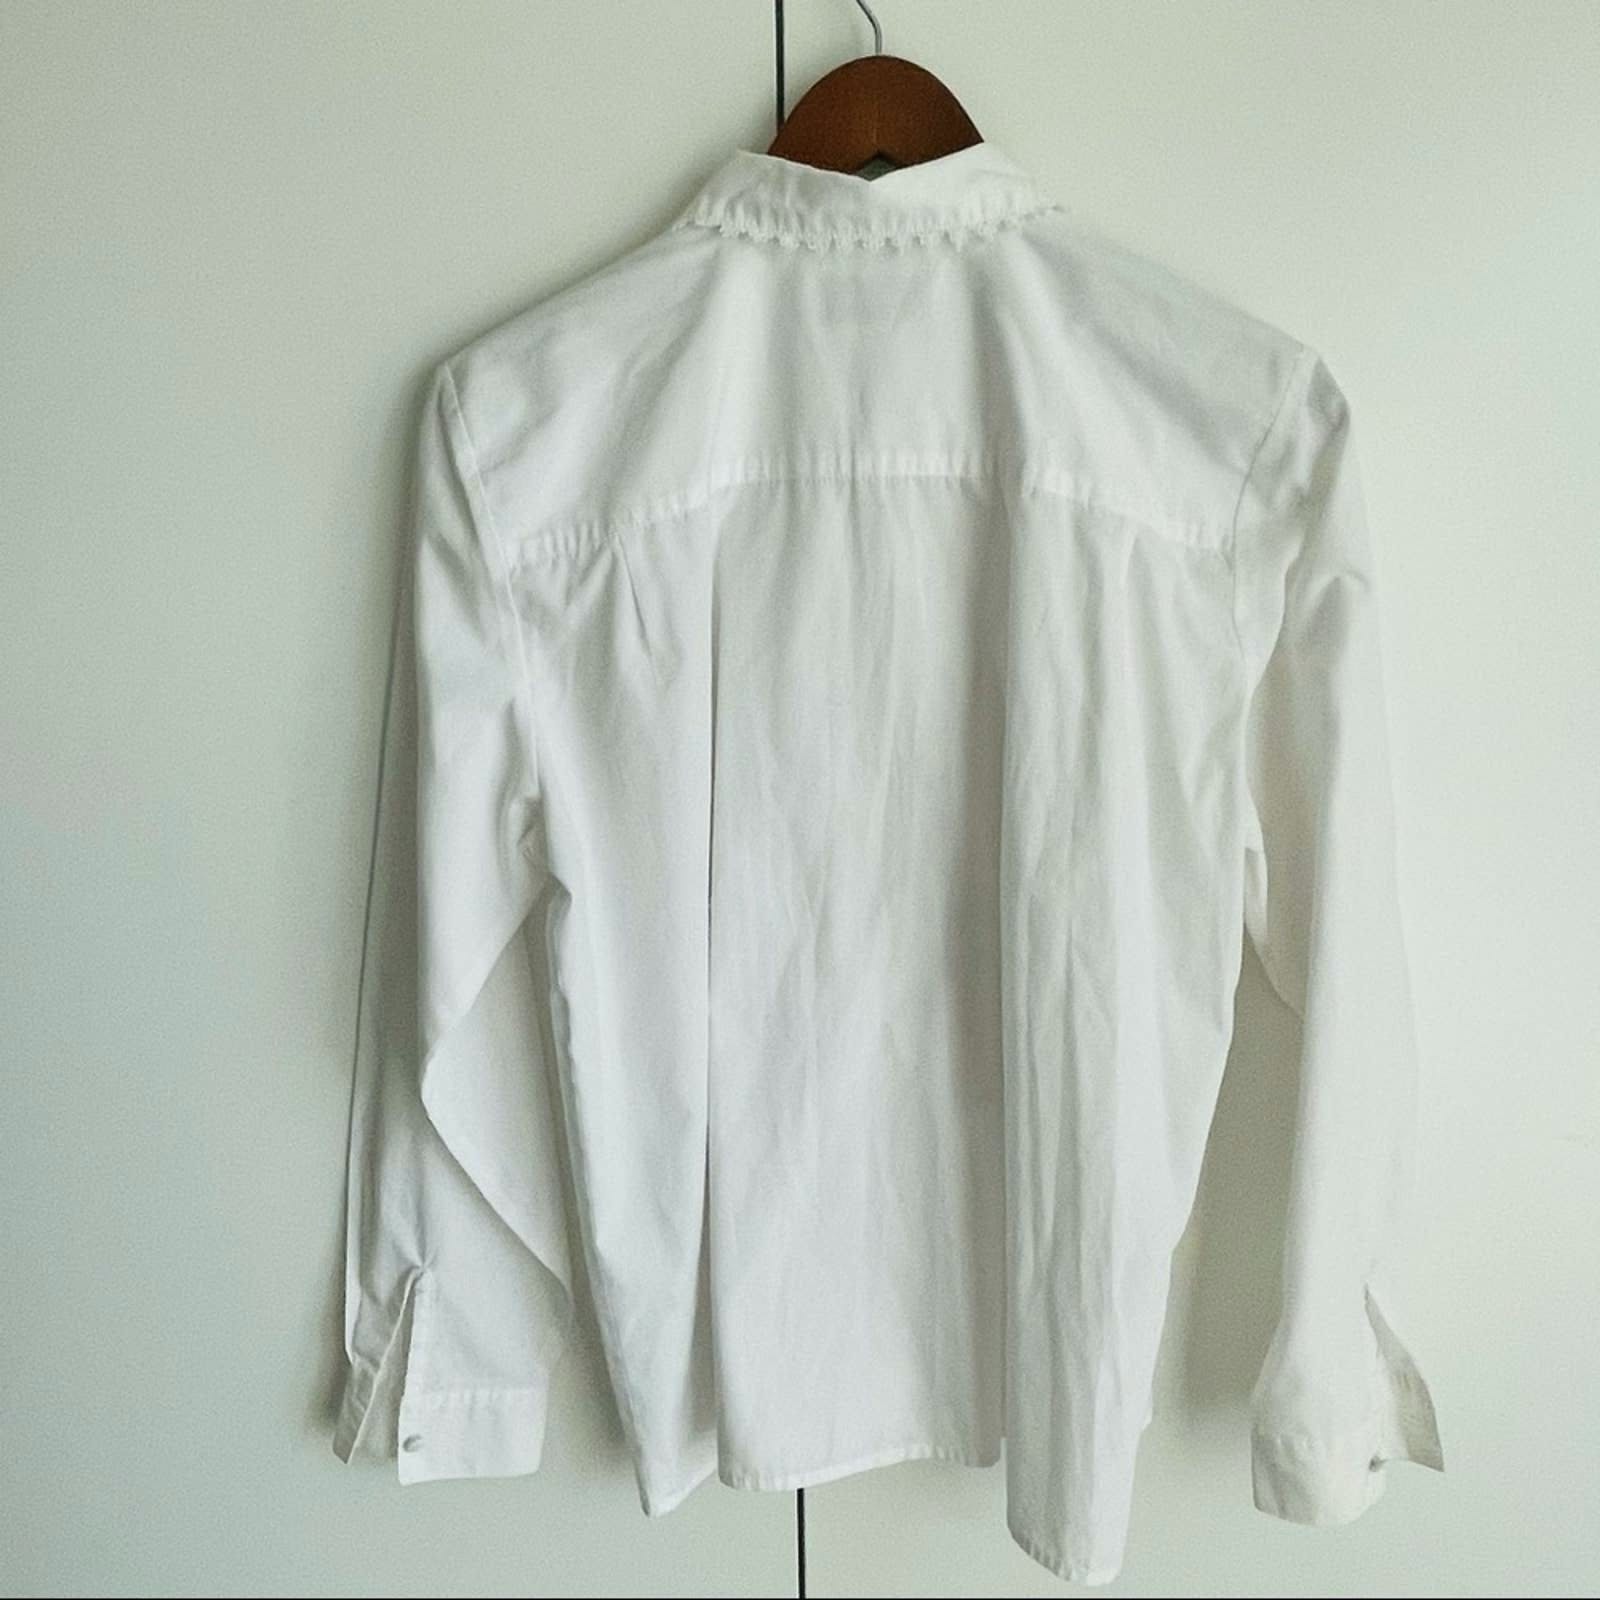 Vintage 90’s White Button Up Lace Collar Blouse by Karen Scott | Shop ...